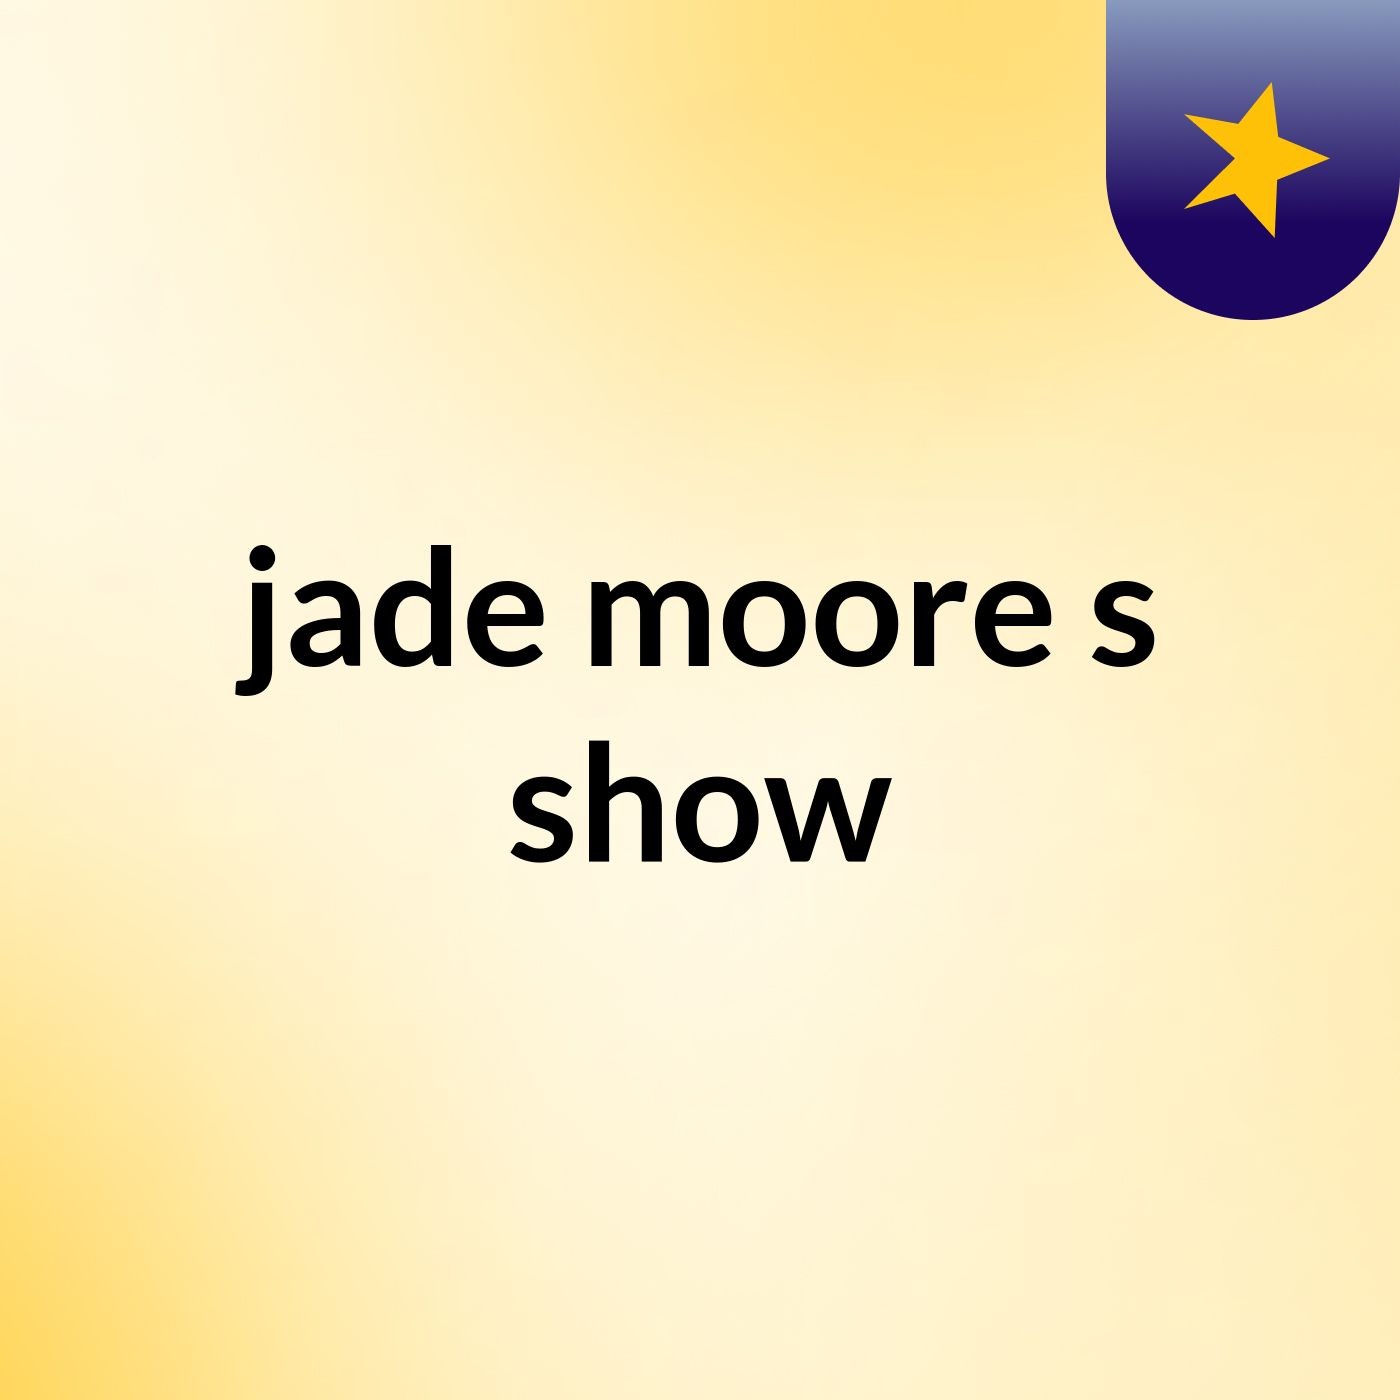 jade moore's show